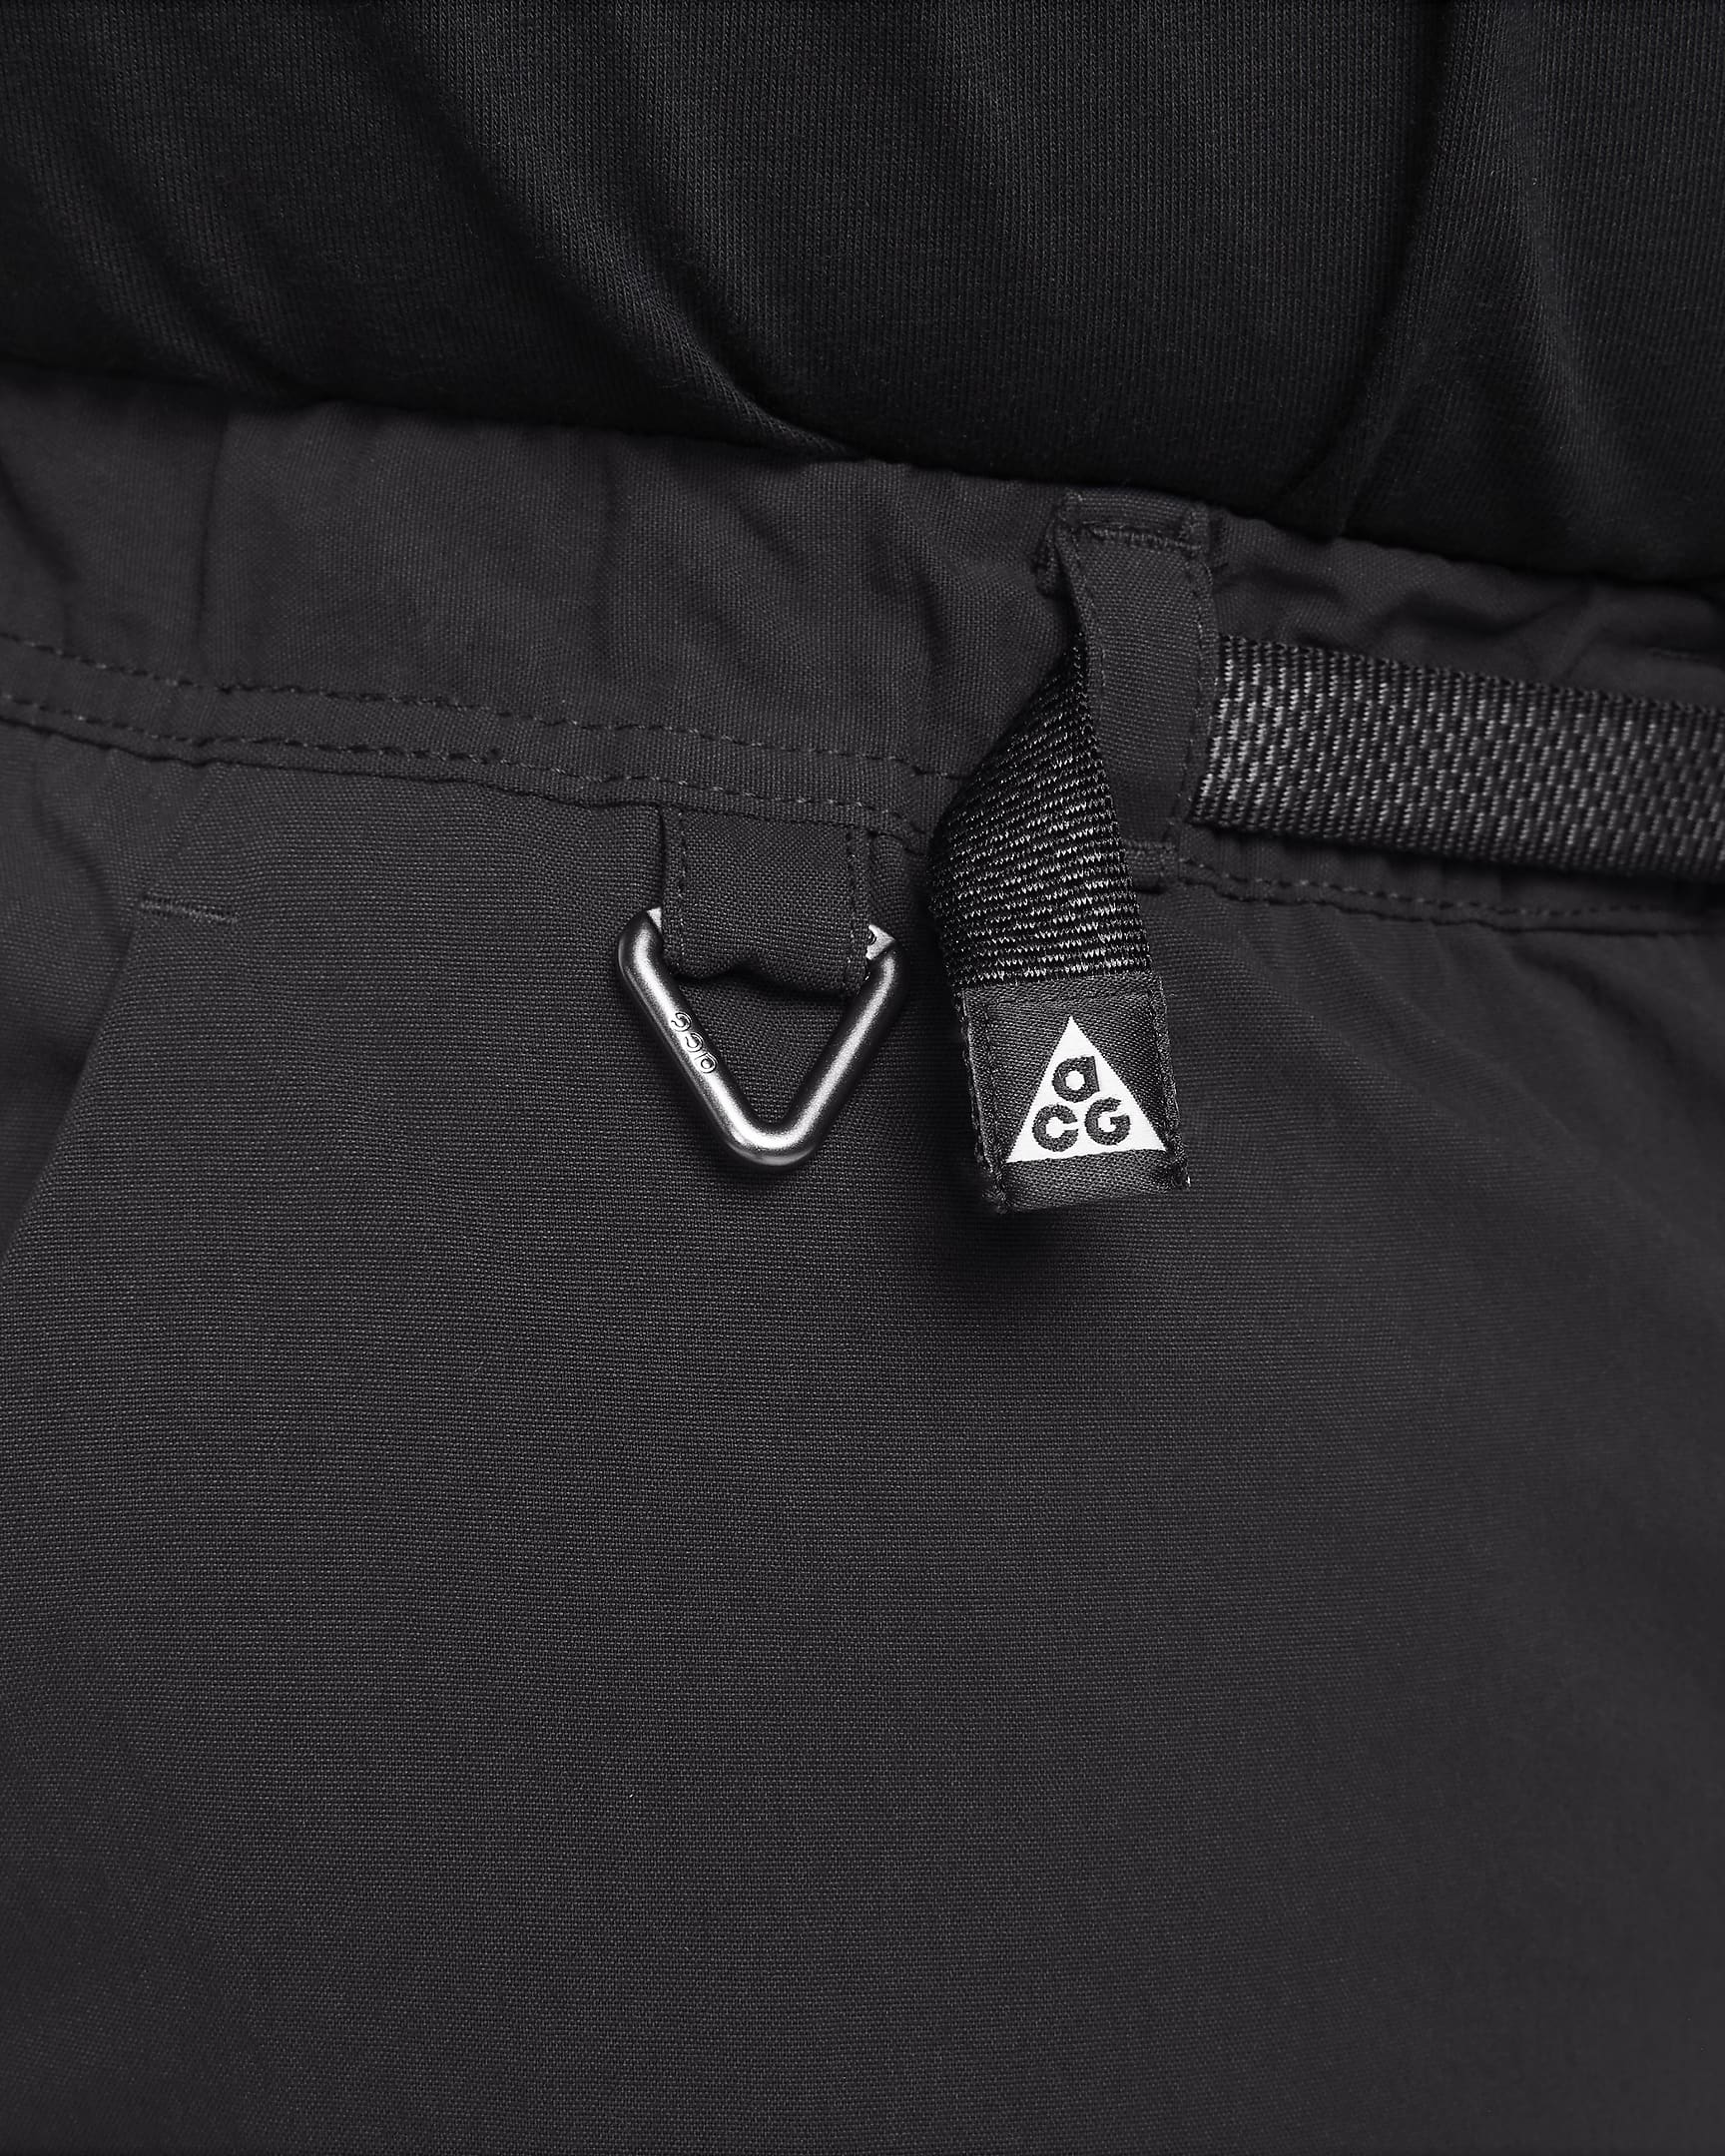 Nike ACG 'Smith Summit' Men's Cargo Trousers - Black/Anthracite/Summit White